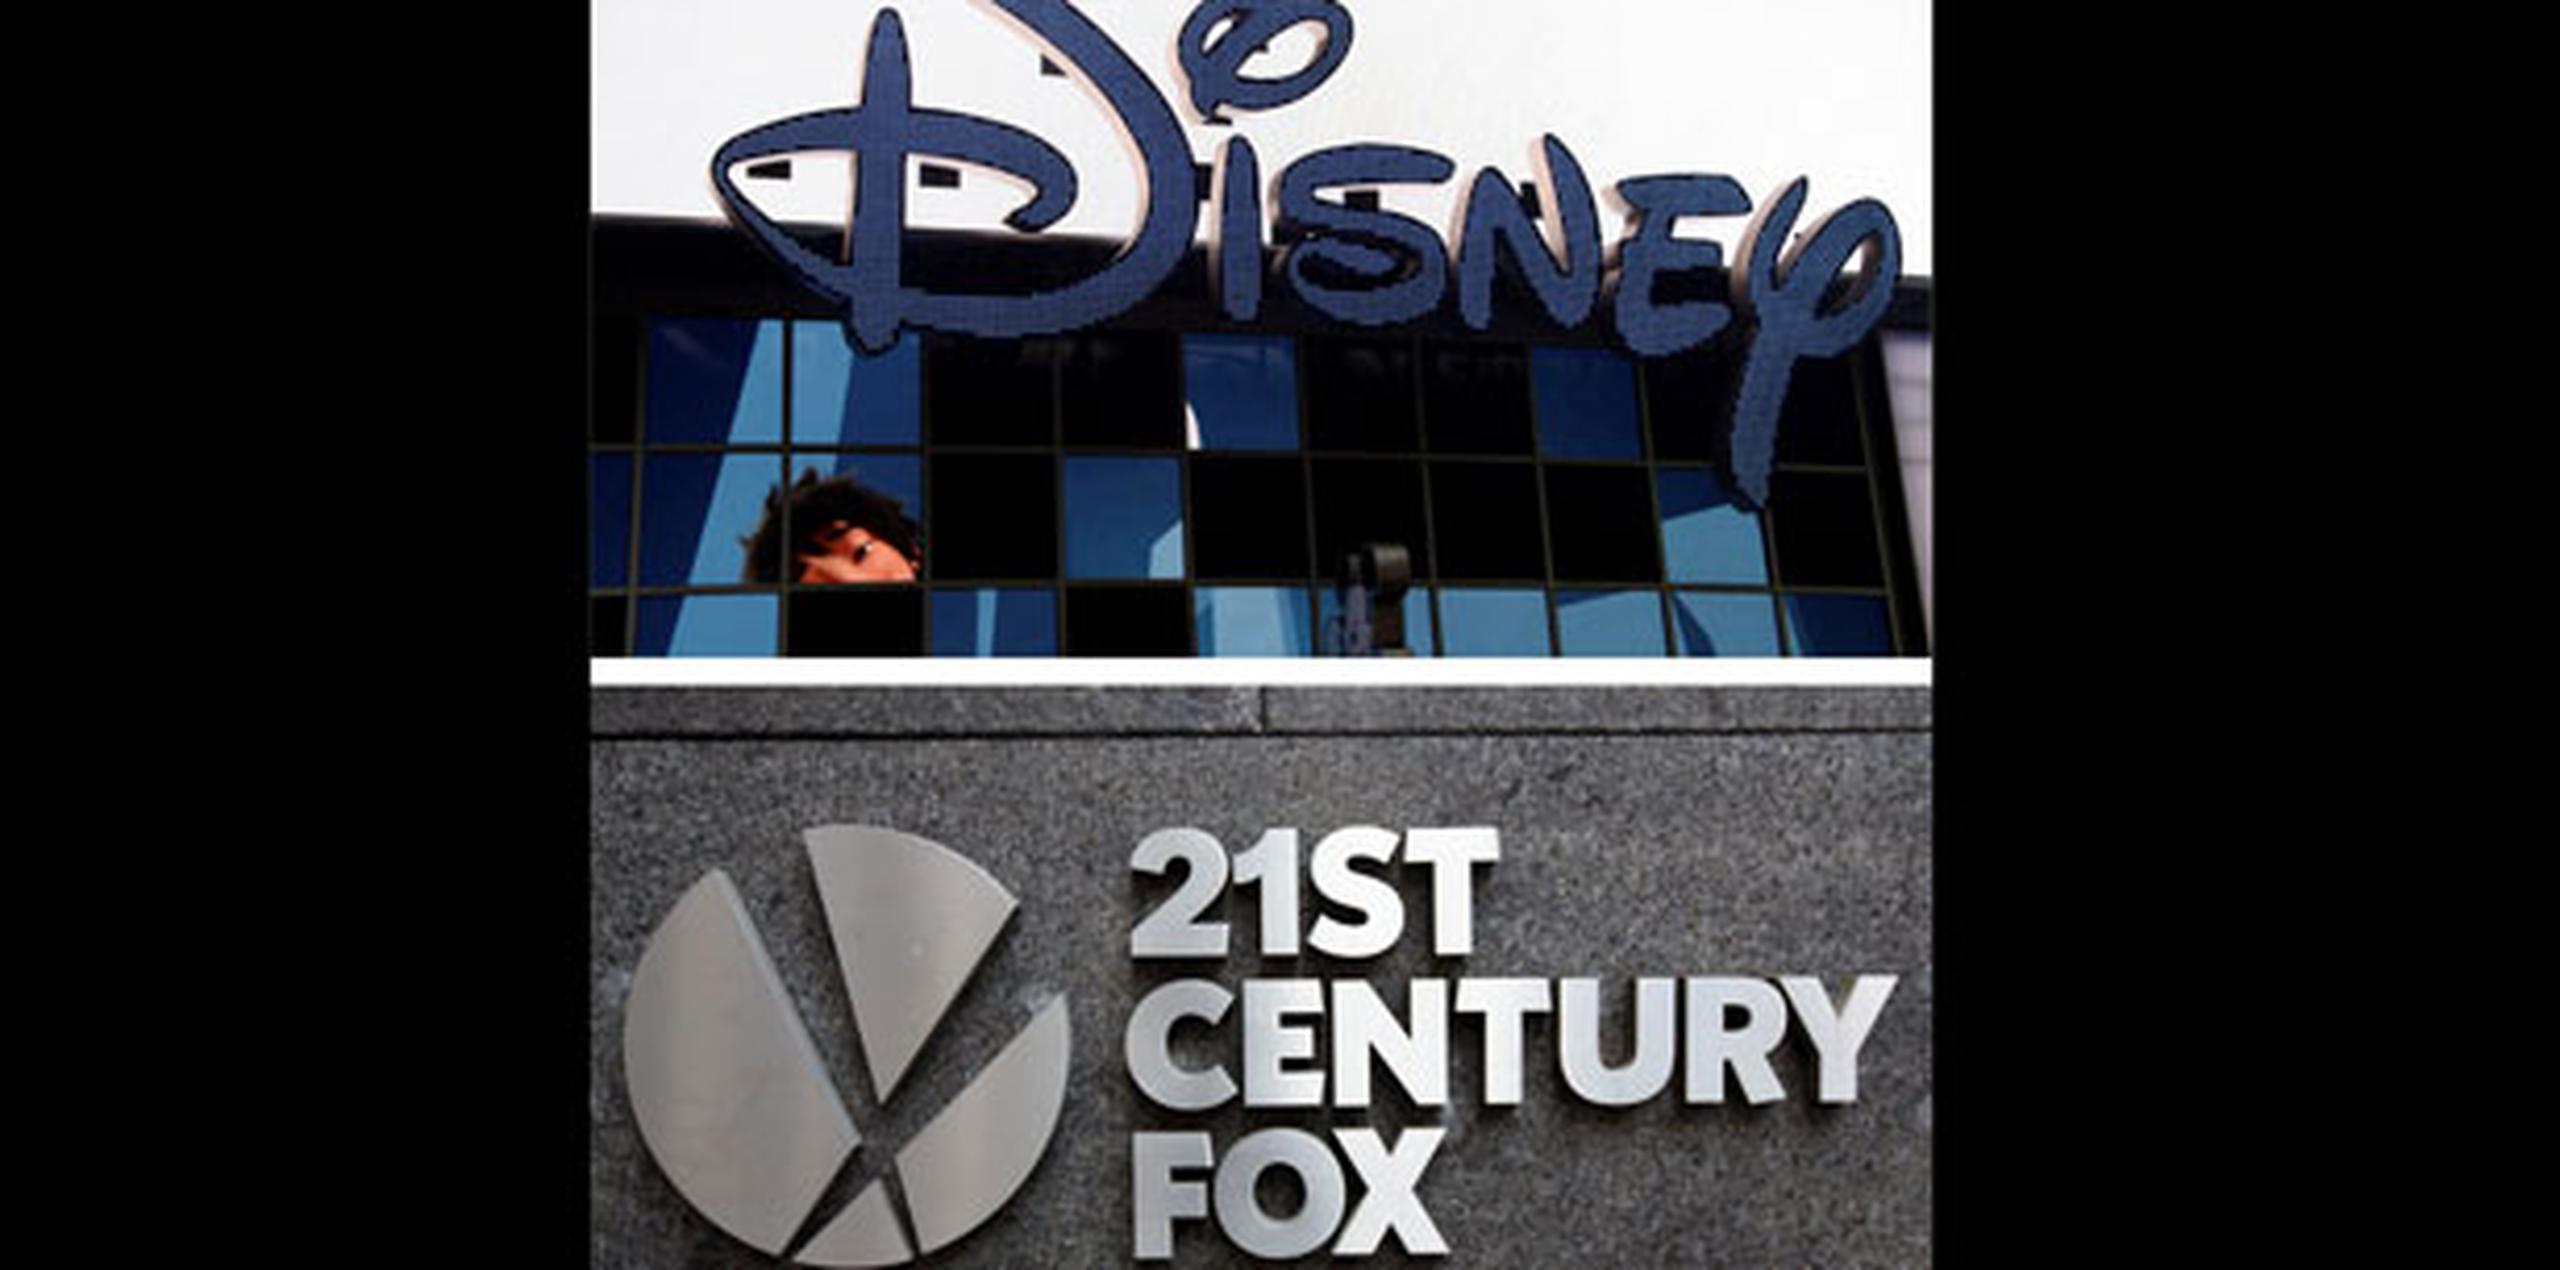 Más allá de lo que pueda decidir Disney acerca del futuro de cada una de estas películas o series, el grupo ha logrado, tras el acuerdo con Fox, hacerse con un contenido de primera calidad que podría ser una baza clave en su inminente batalla frente a líderes del "streaming" como Netflix. (EFE)